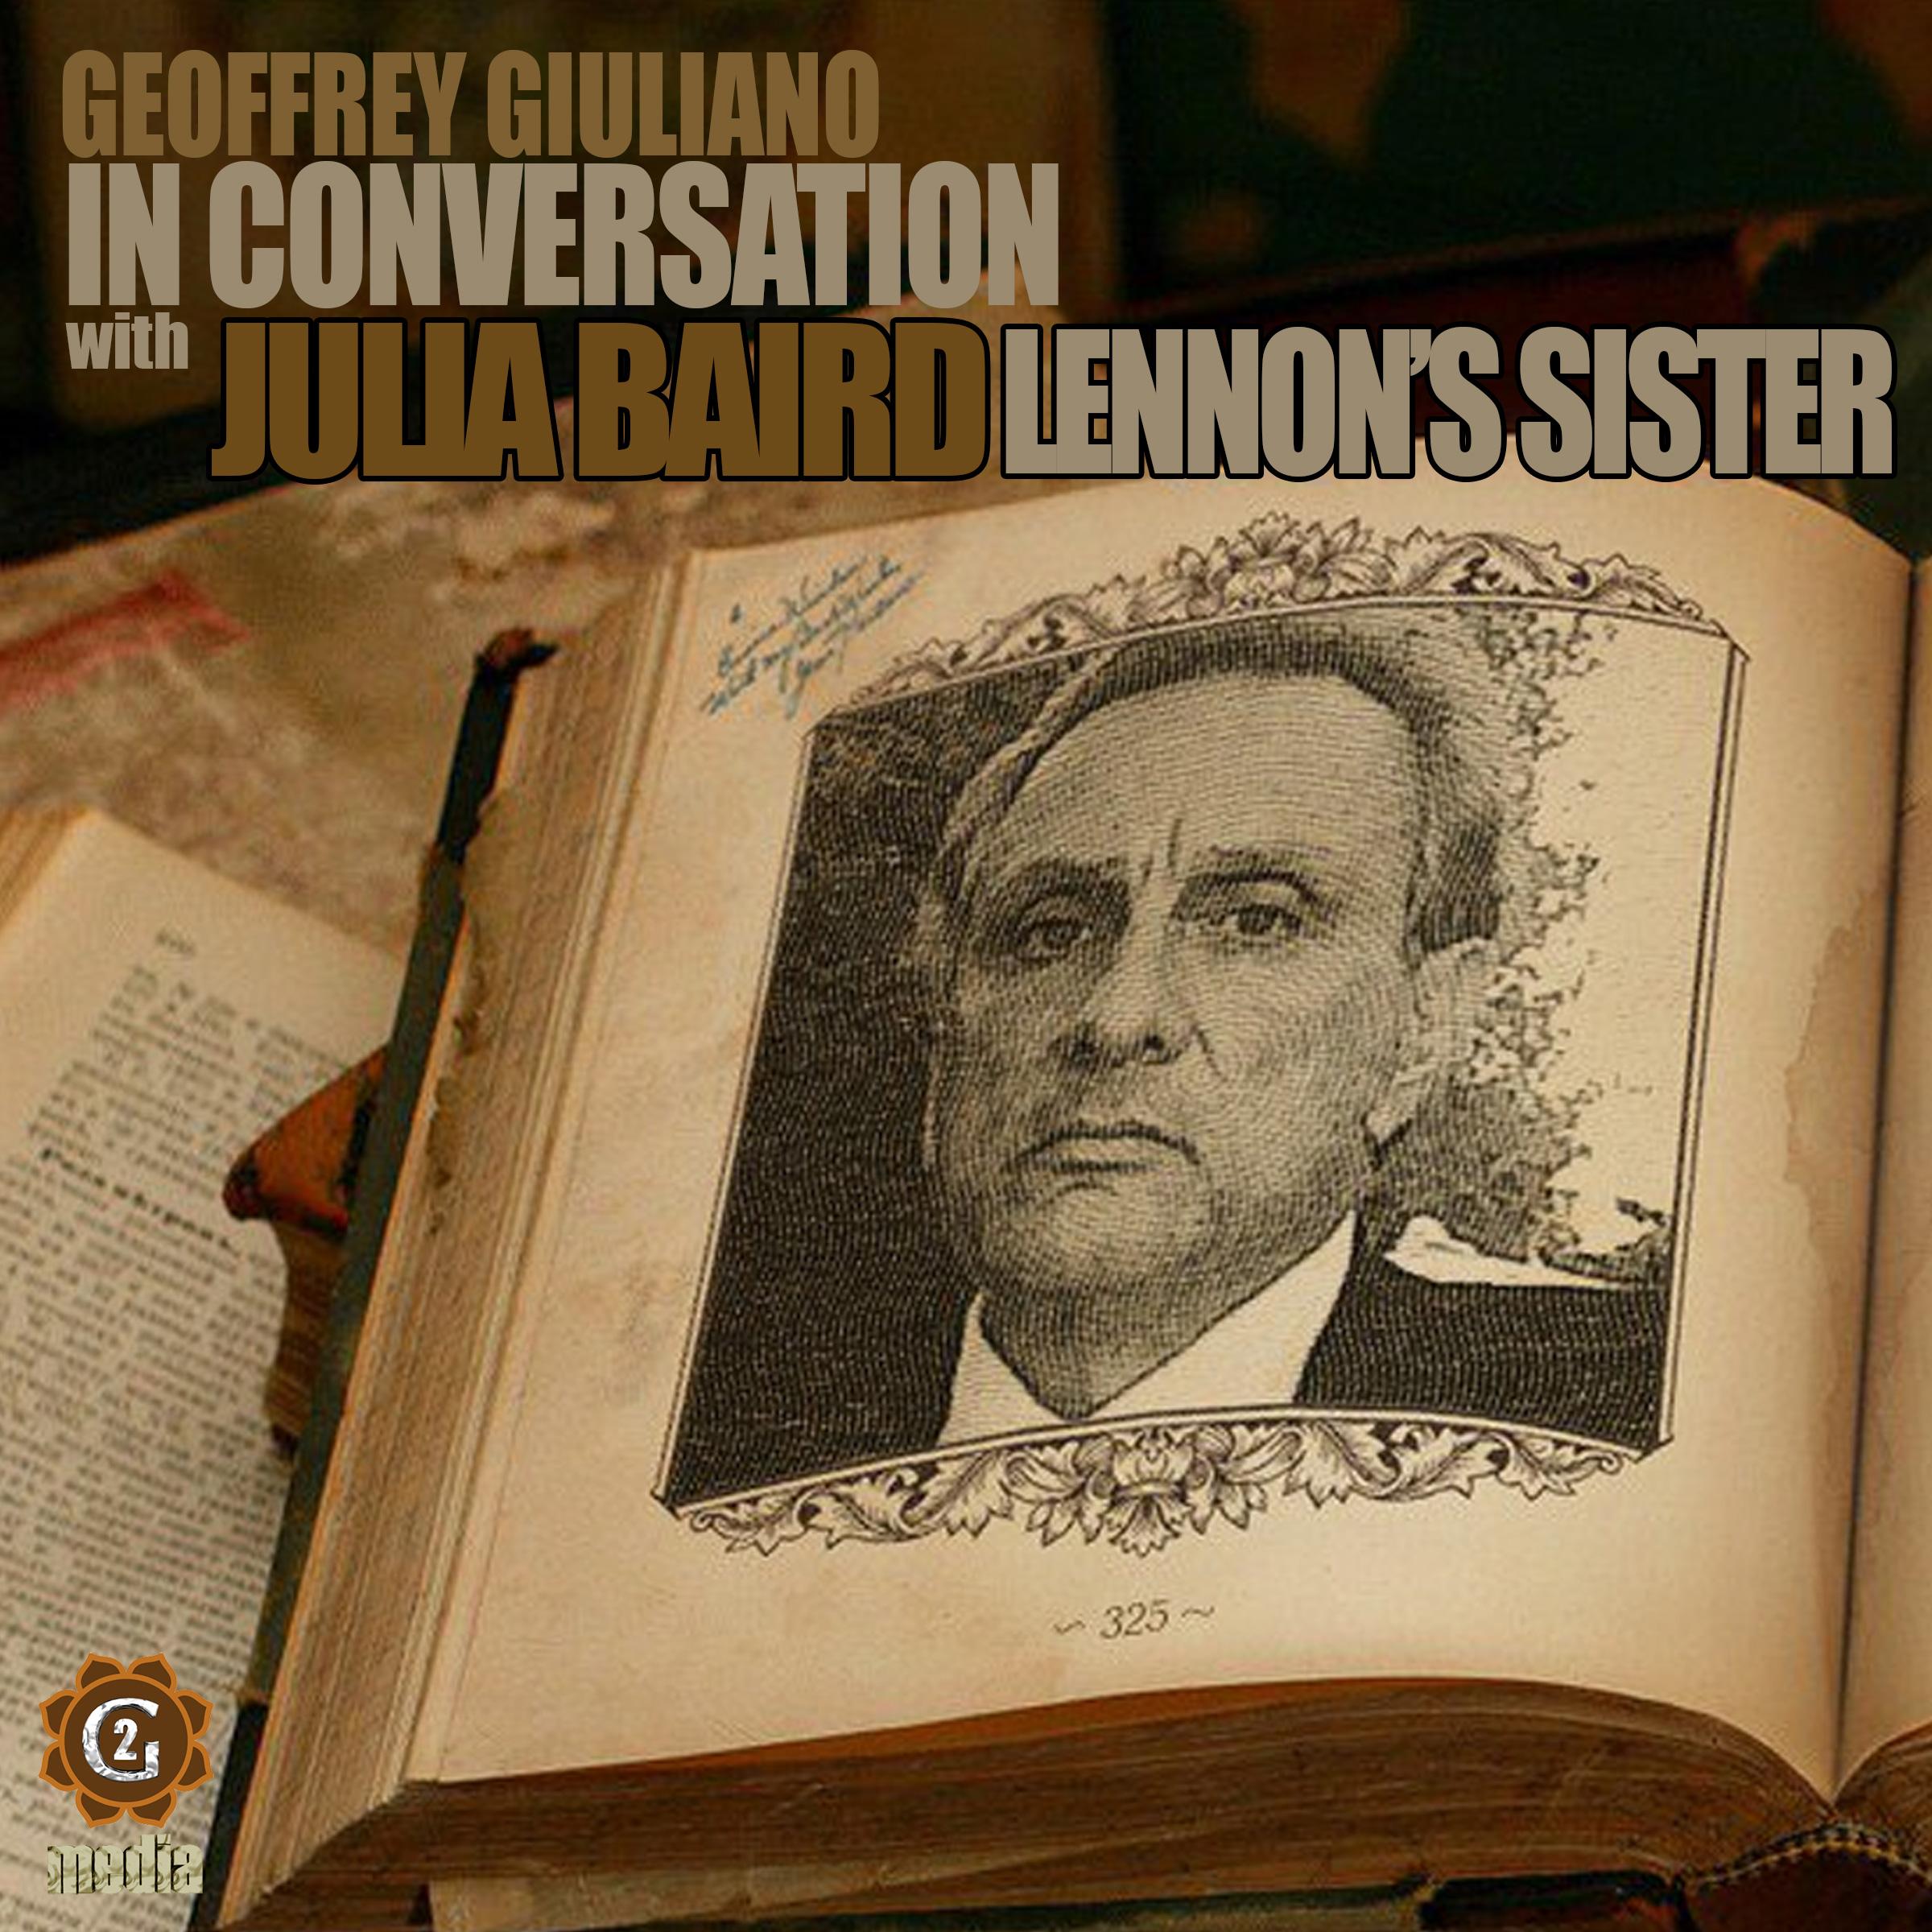 Julia Baird John Lennon’s Sister In Conversation